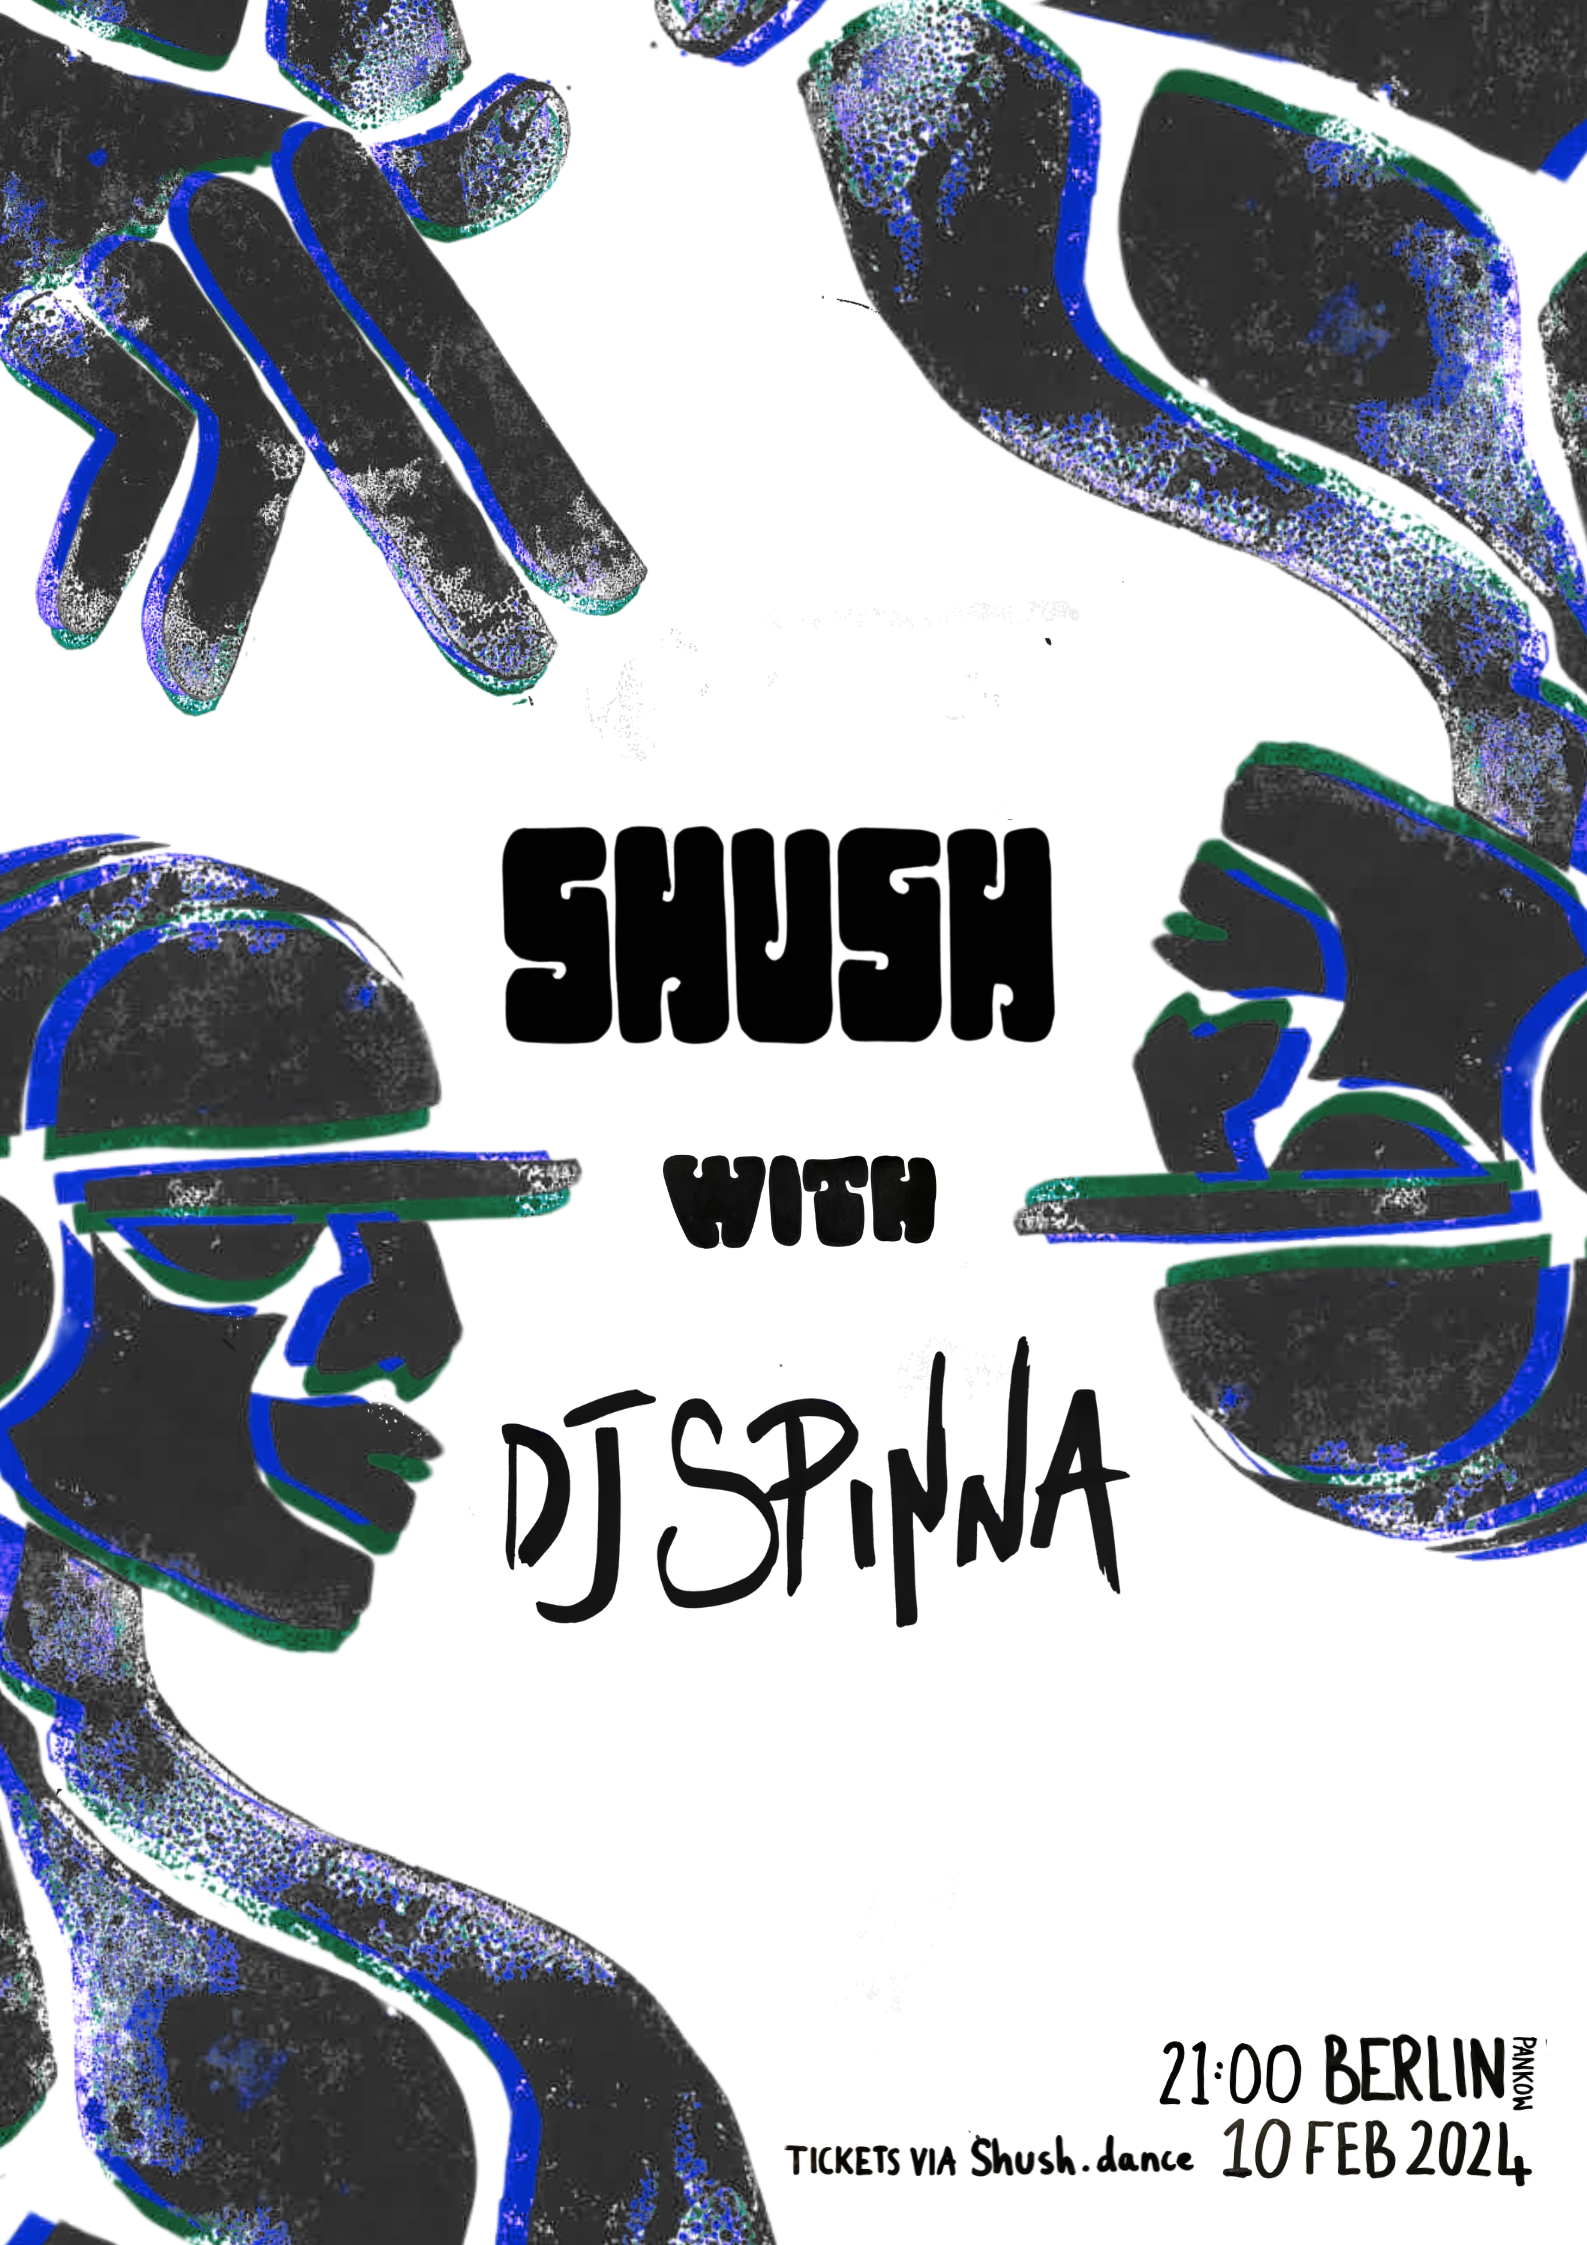 SHUSH with DJ Spinna - Página frontal